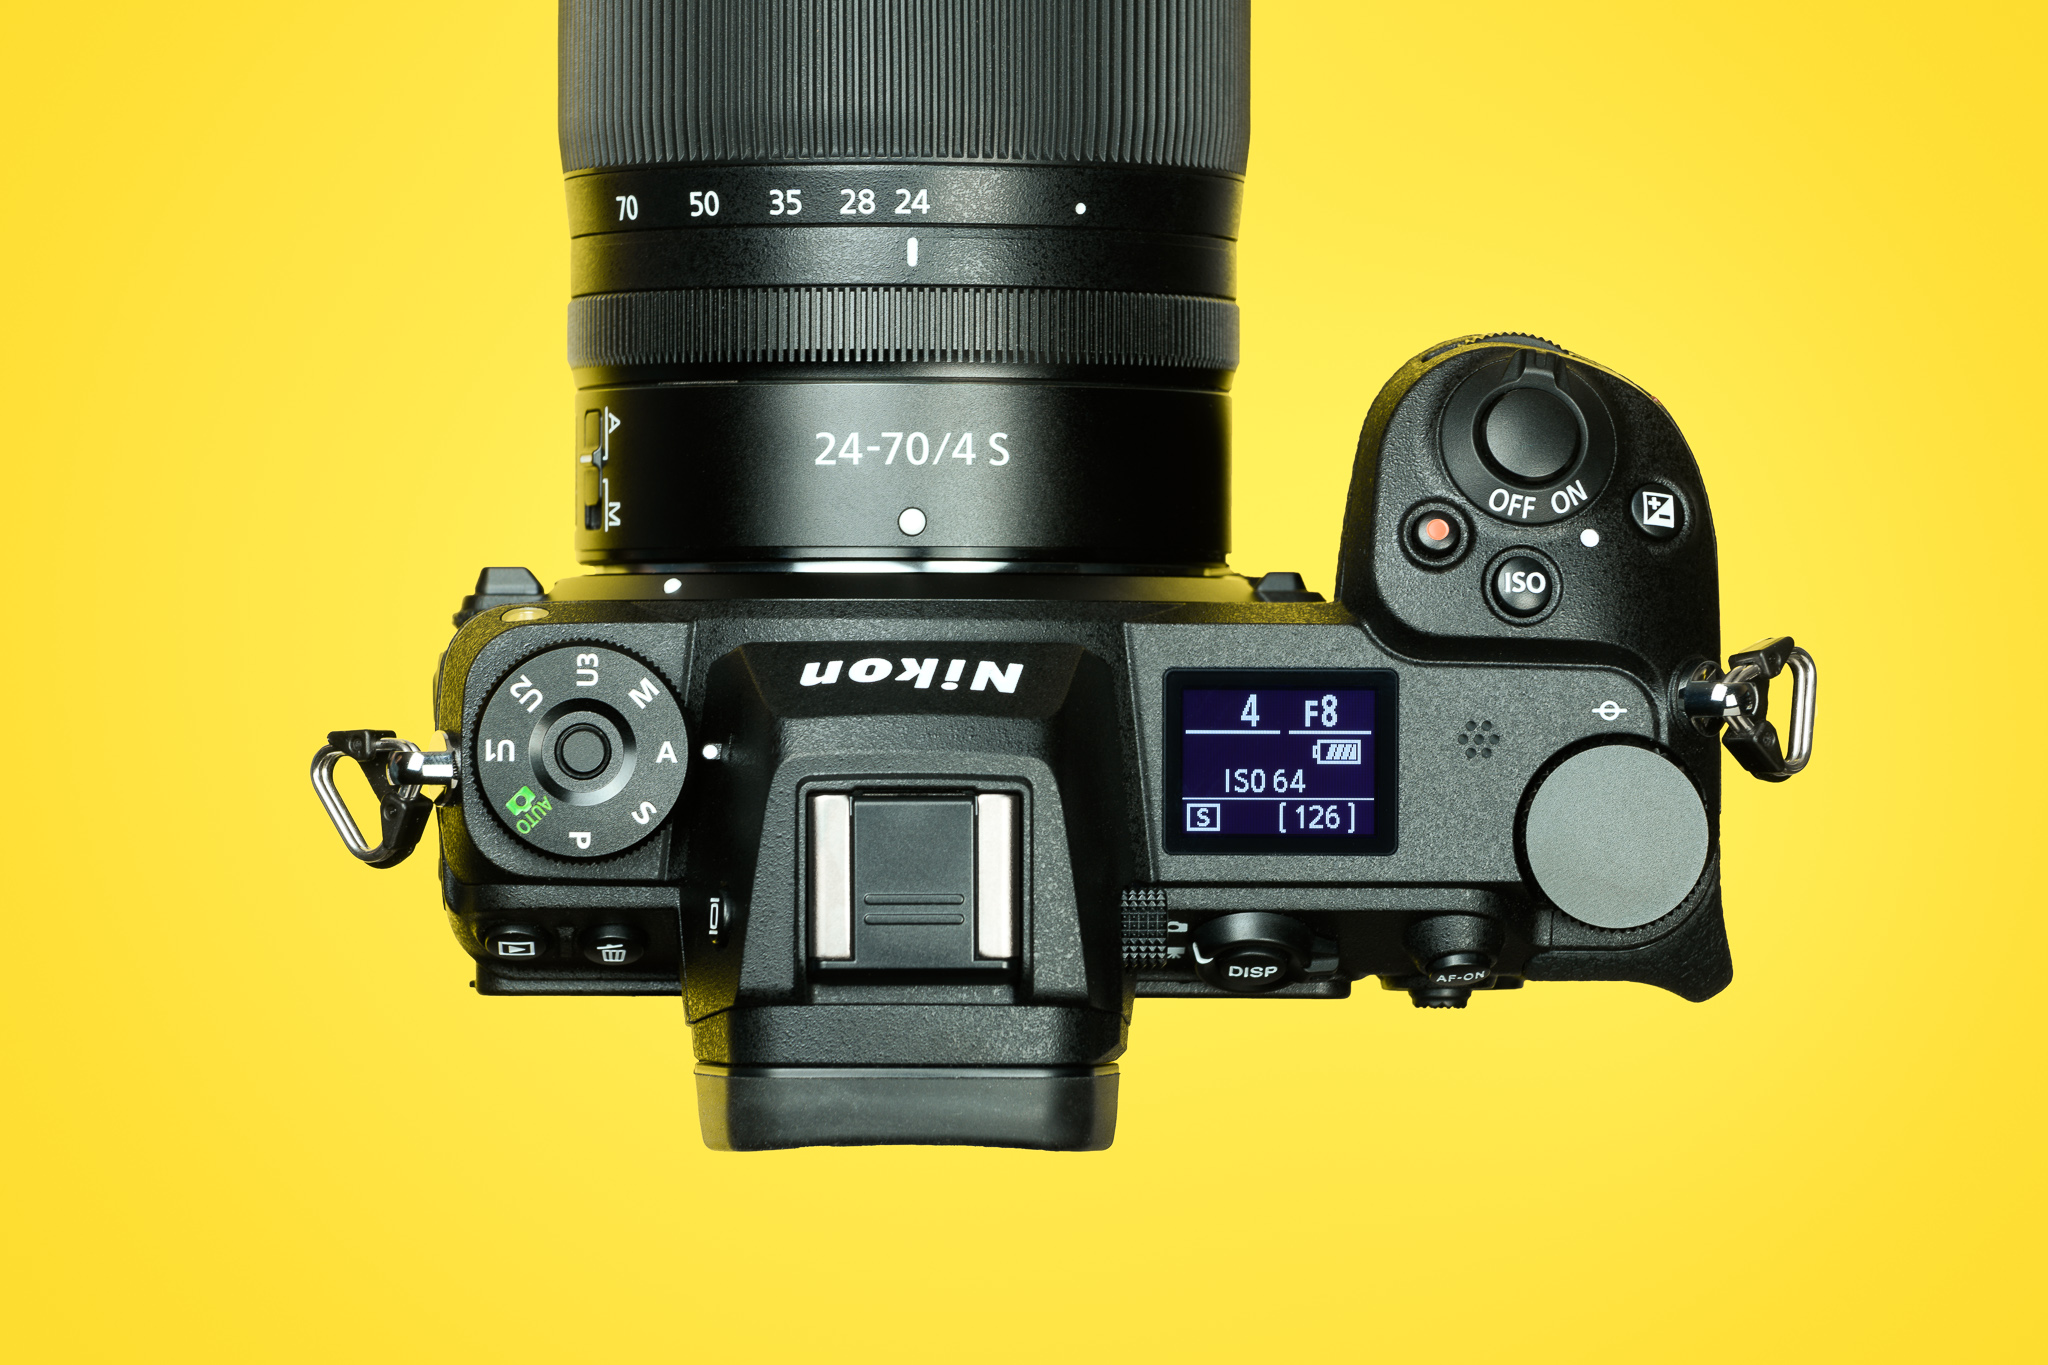 Nikon Z7 II Review